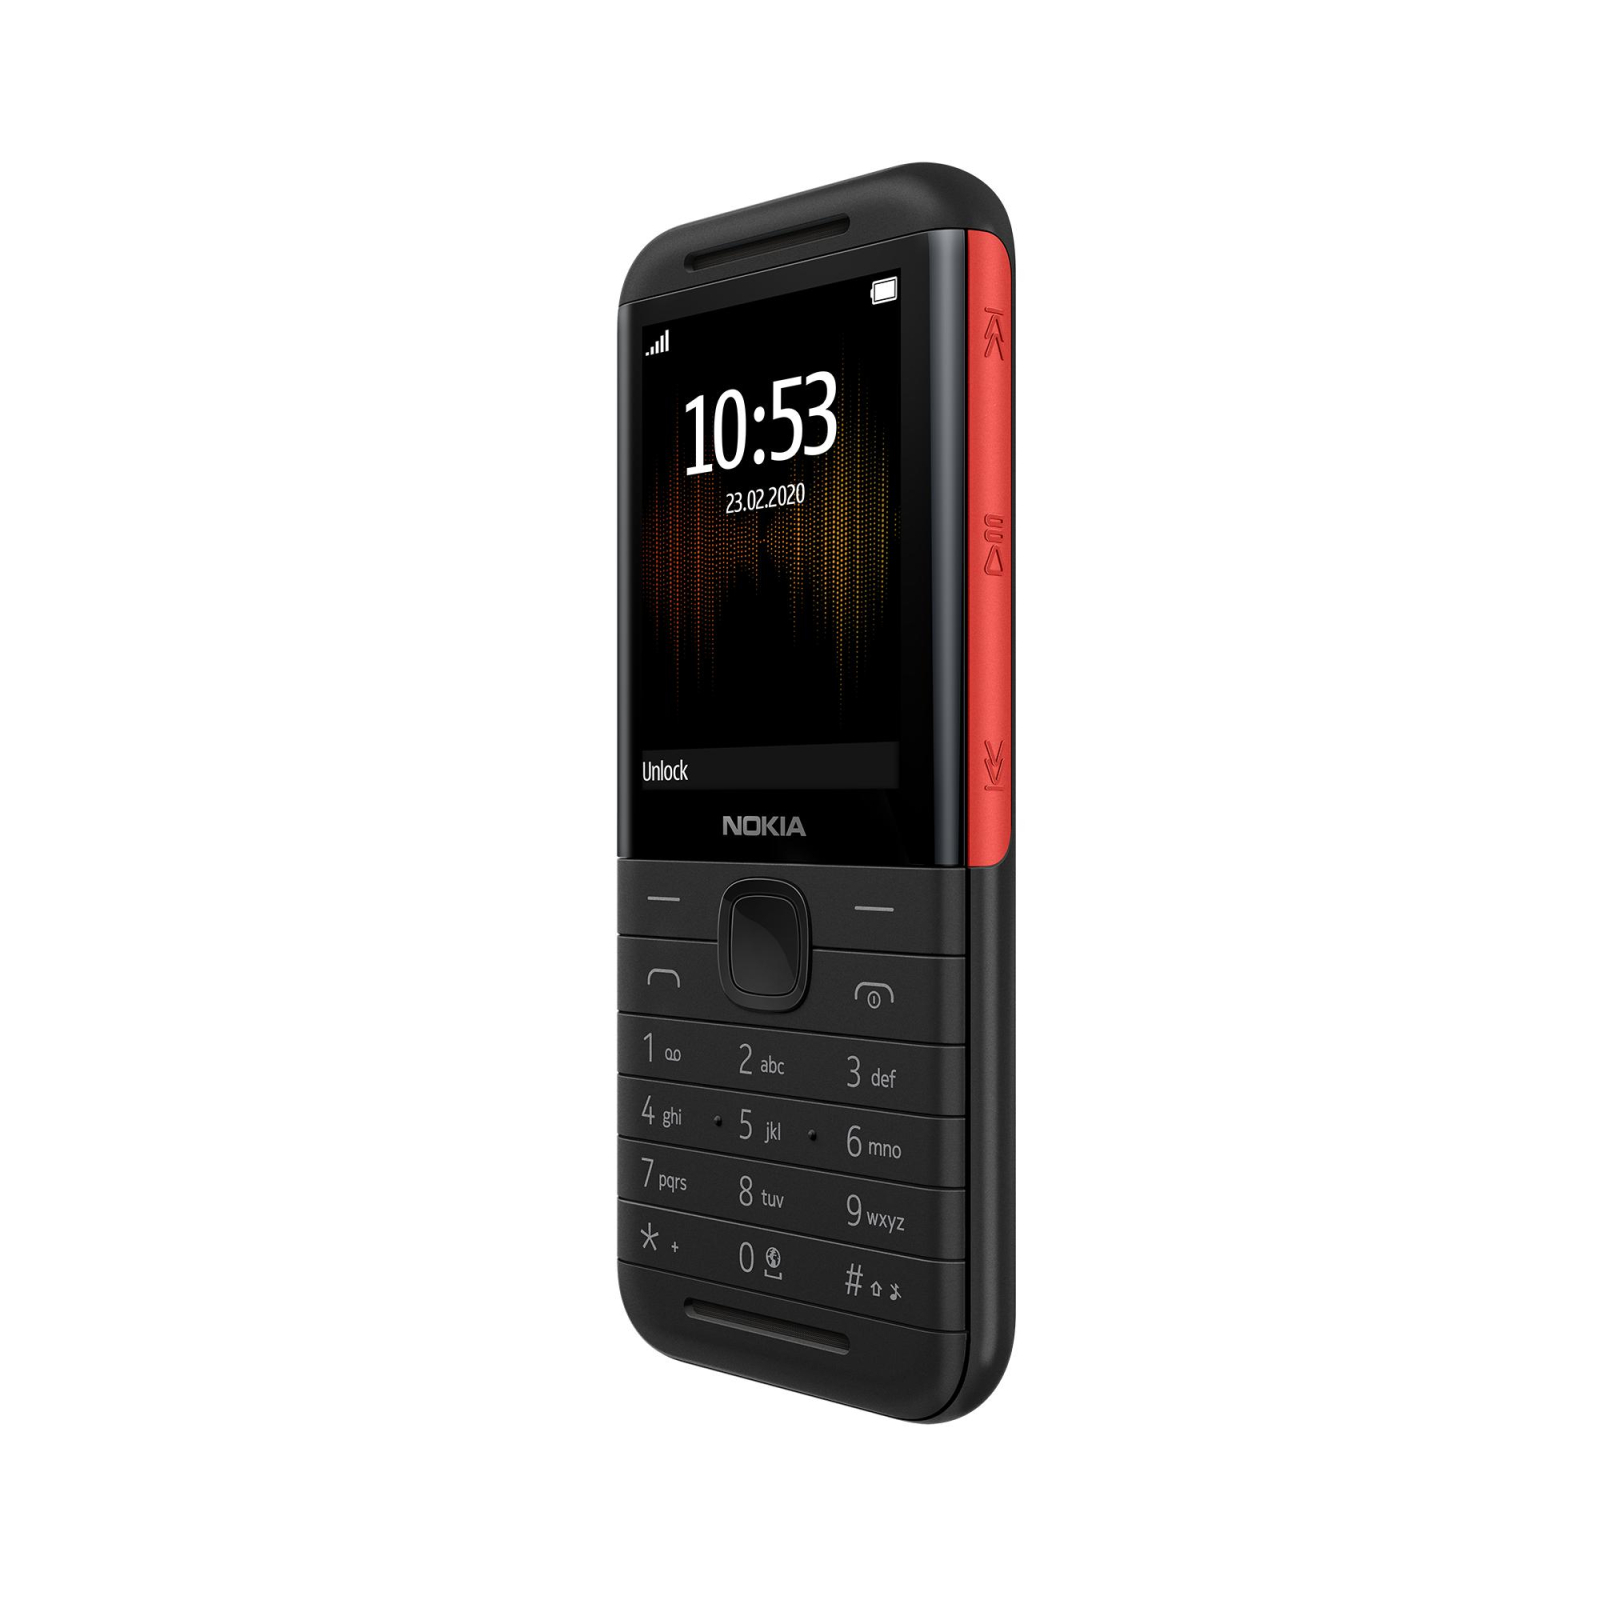 Мобильный телефон Nokia 5310 DS White-Red изображение 2